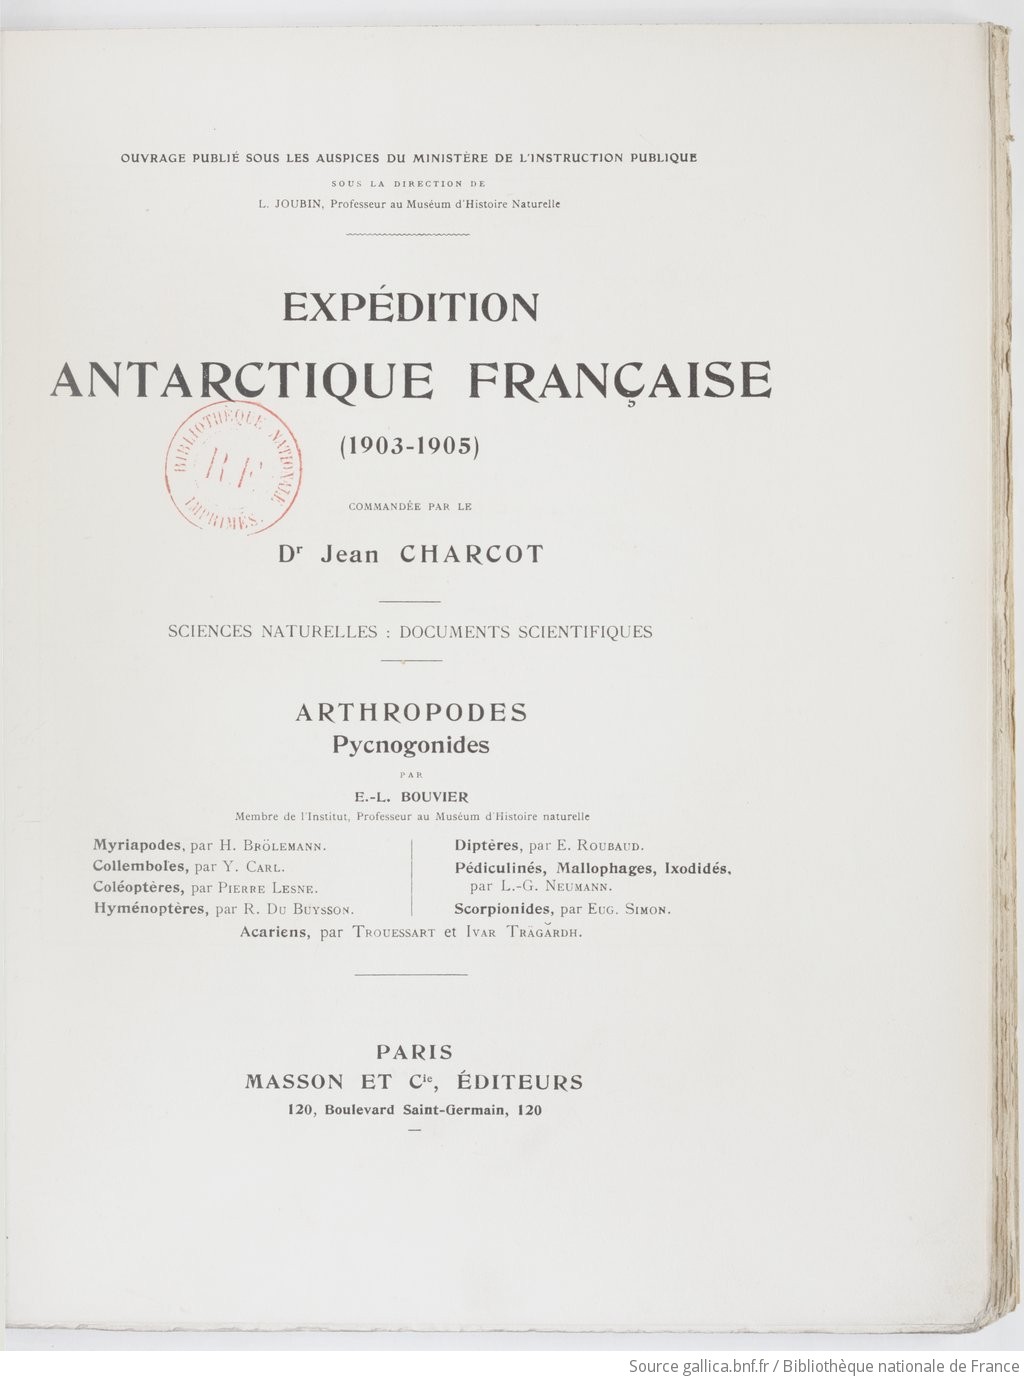 Expédition antarctique française (1903-1905), commandée par le dr Jean Charcot. , Arthropodes, pycnogonides